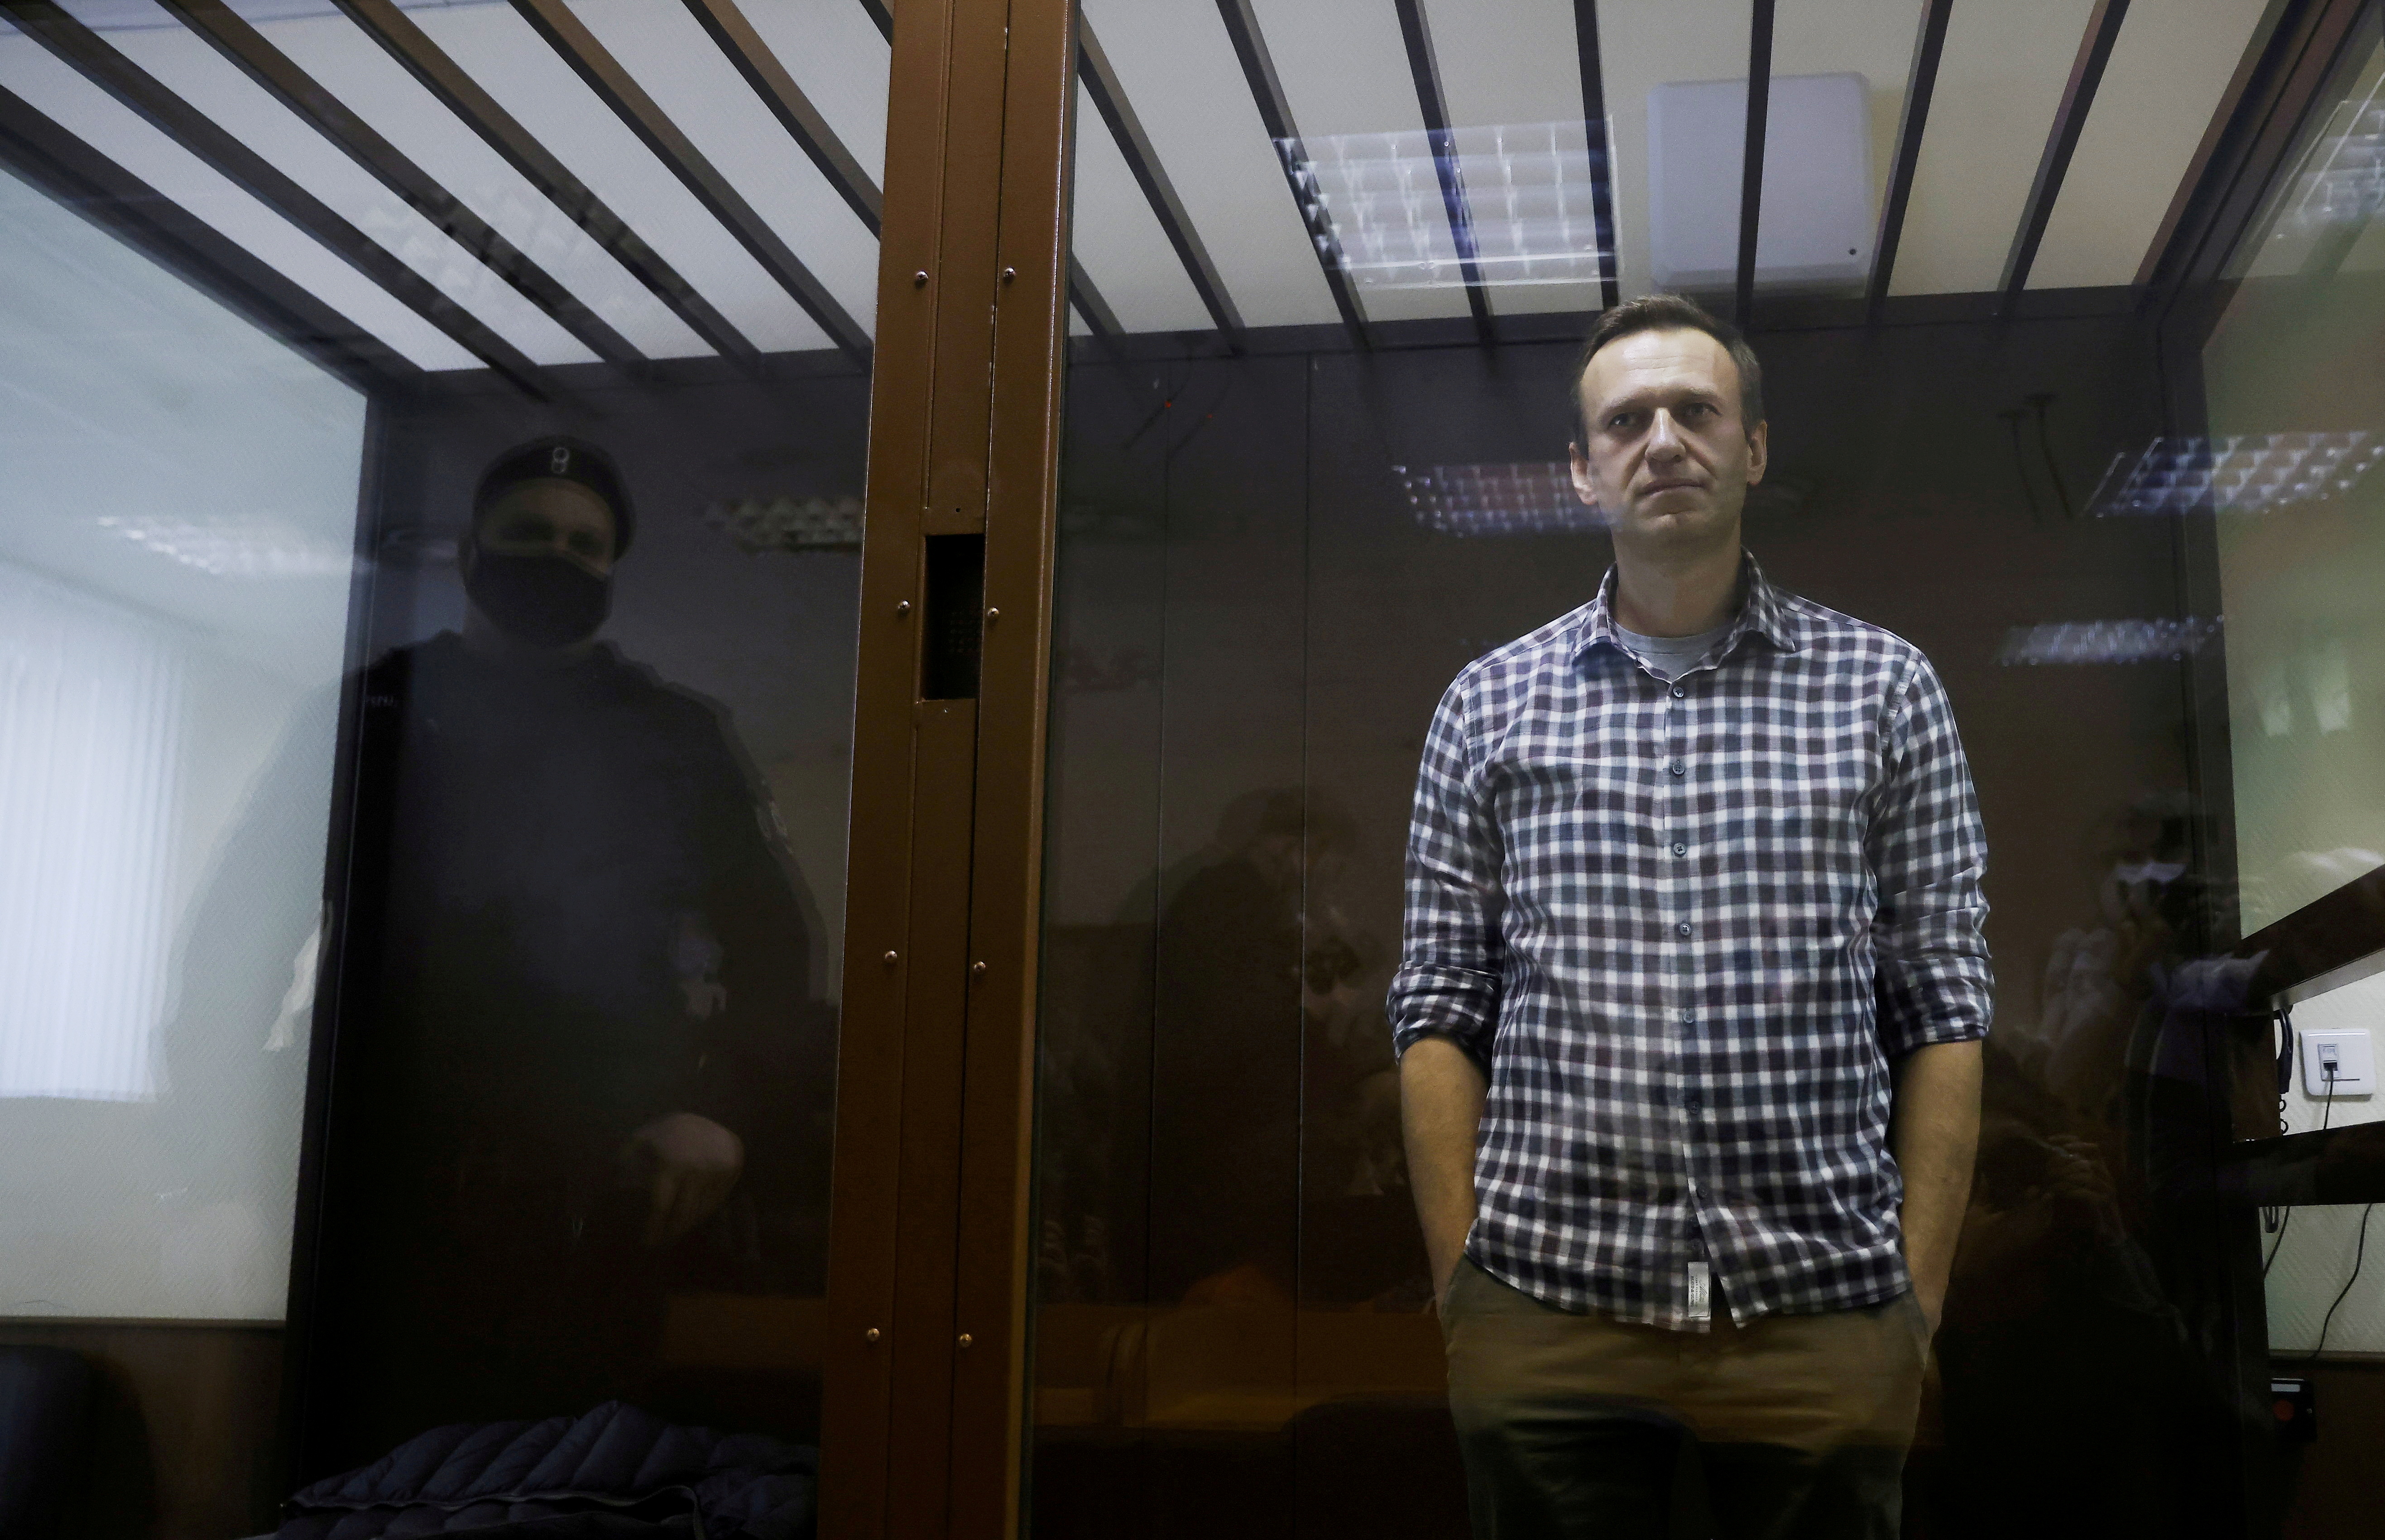 El líder de la oposición rusa Alexei Navalny asiste a una audiencia judicial en Moscú, Rusia, el 20 de febrero de 2021. REUTERS / Maxim Shemetov /